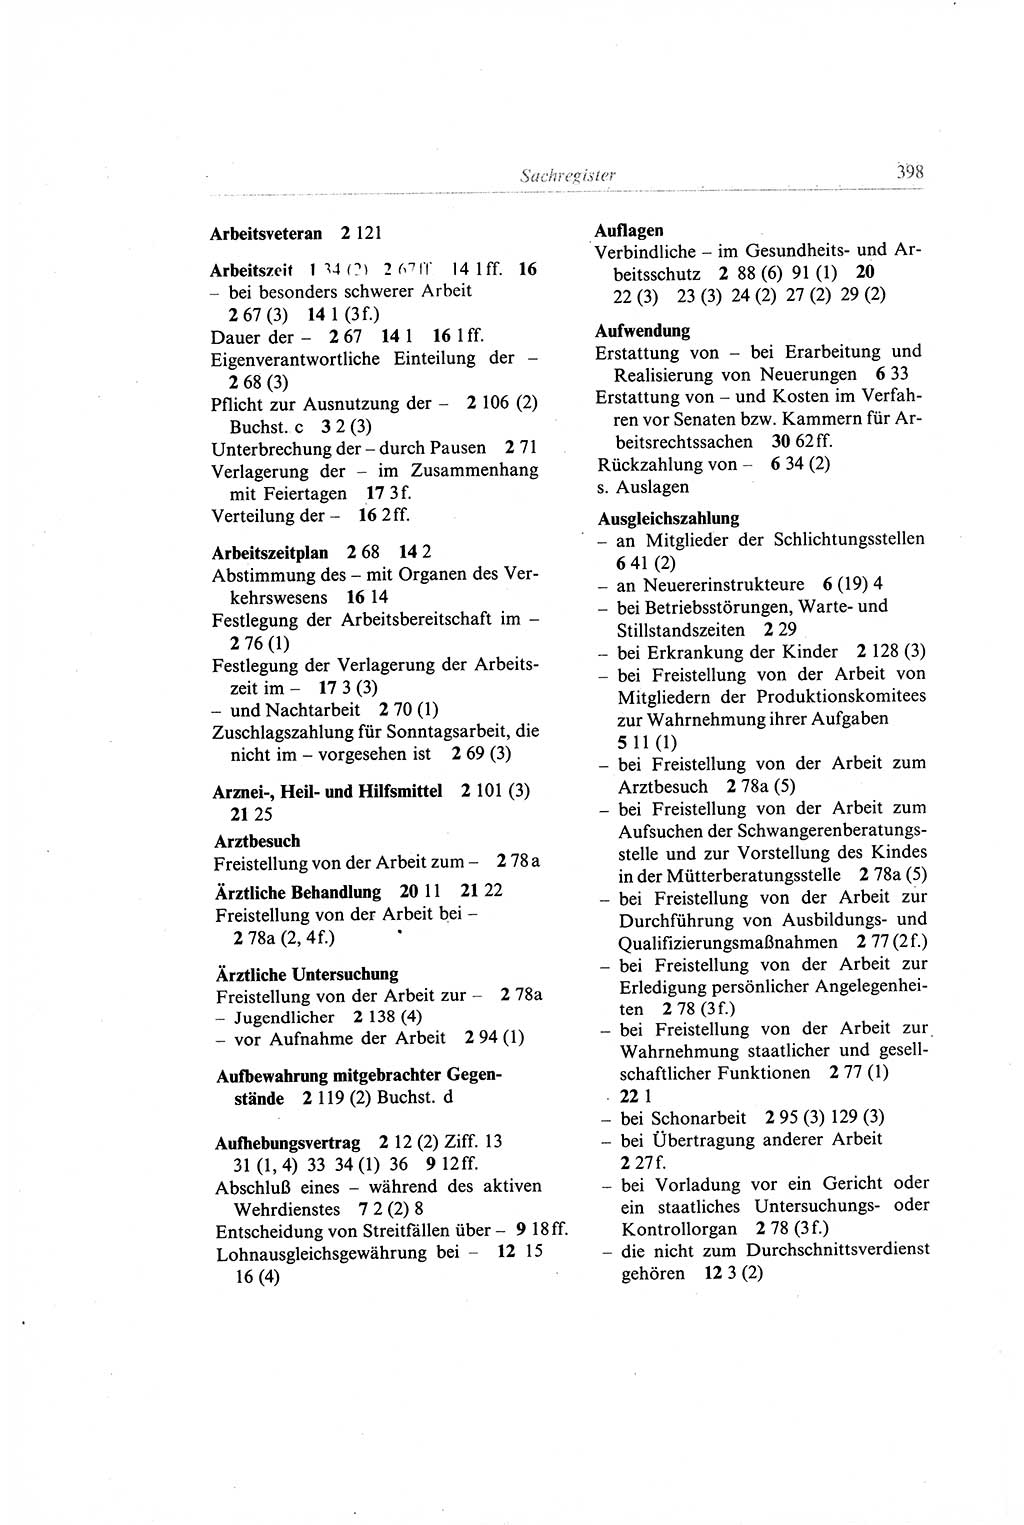 Gesetzbuch der Arbeit (GBA) und andere ausgewählte rechtliche Bestimmungen [Deutsche Demokratische Republik (DDR)] 1968, Seite 398 (GBA DDR 1968, S. 398)